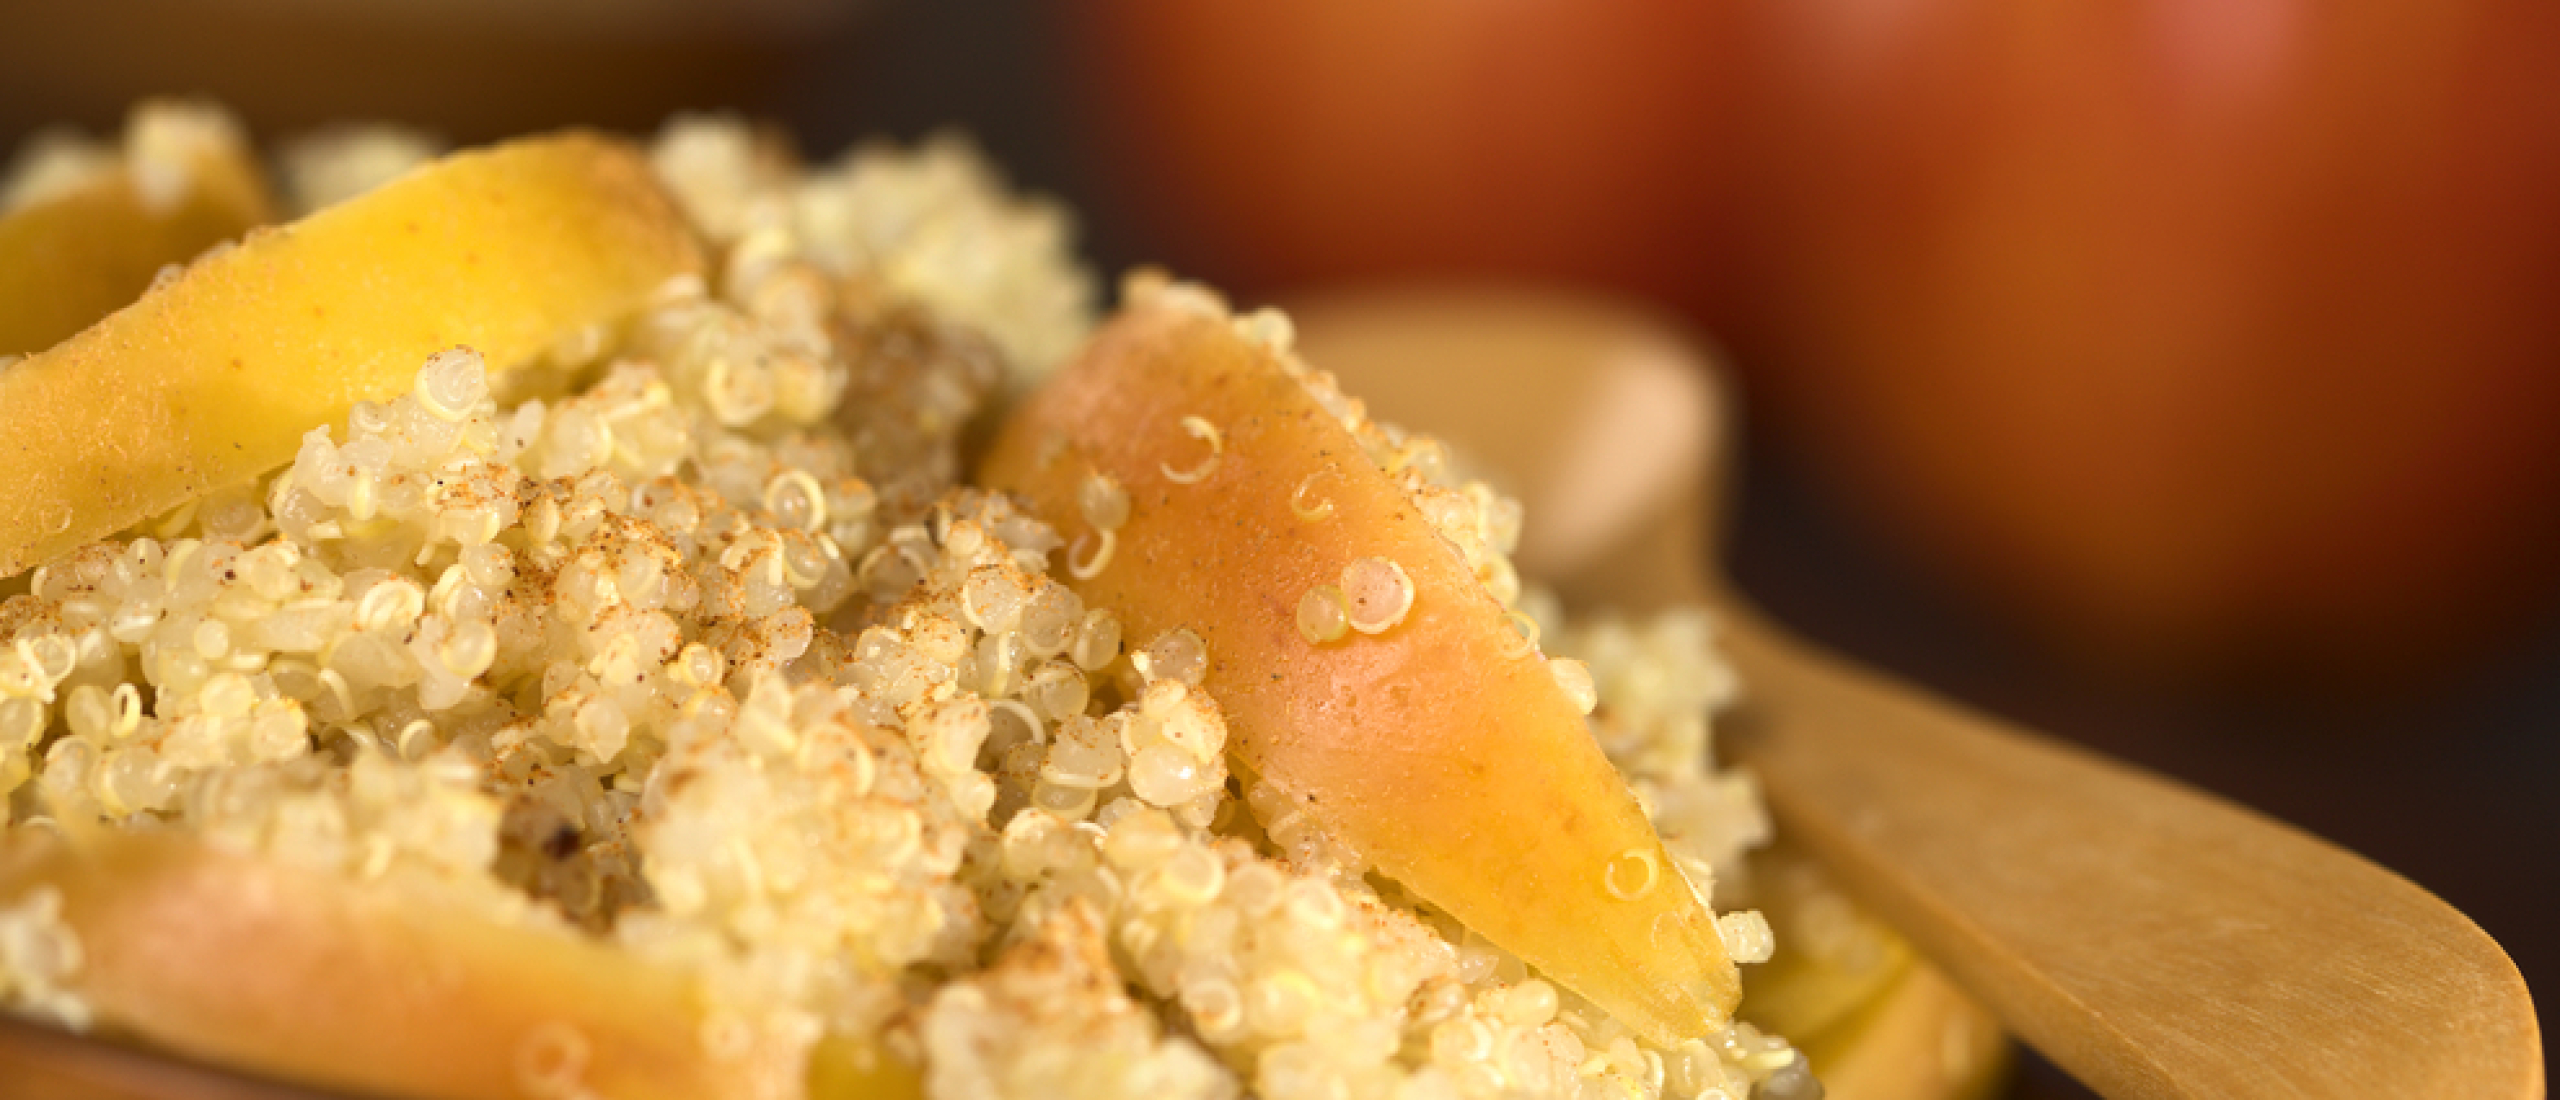 Appel kaneel quinoa ontbijt taartje